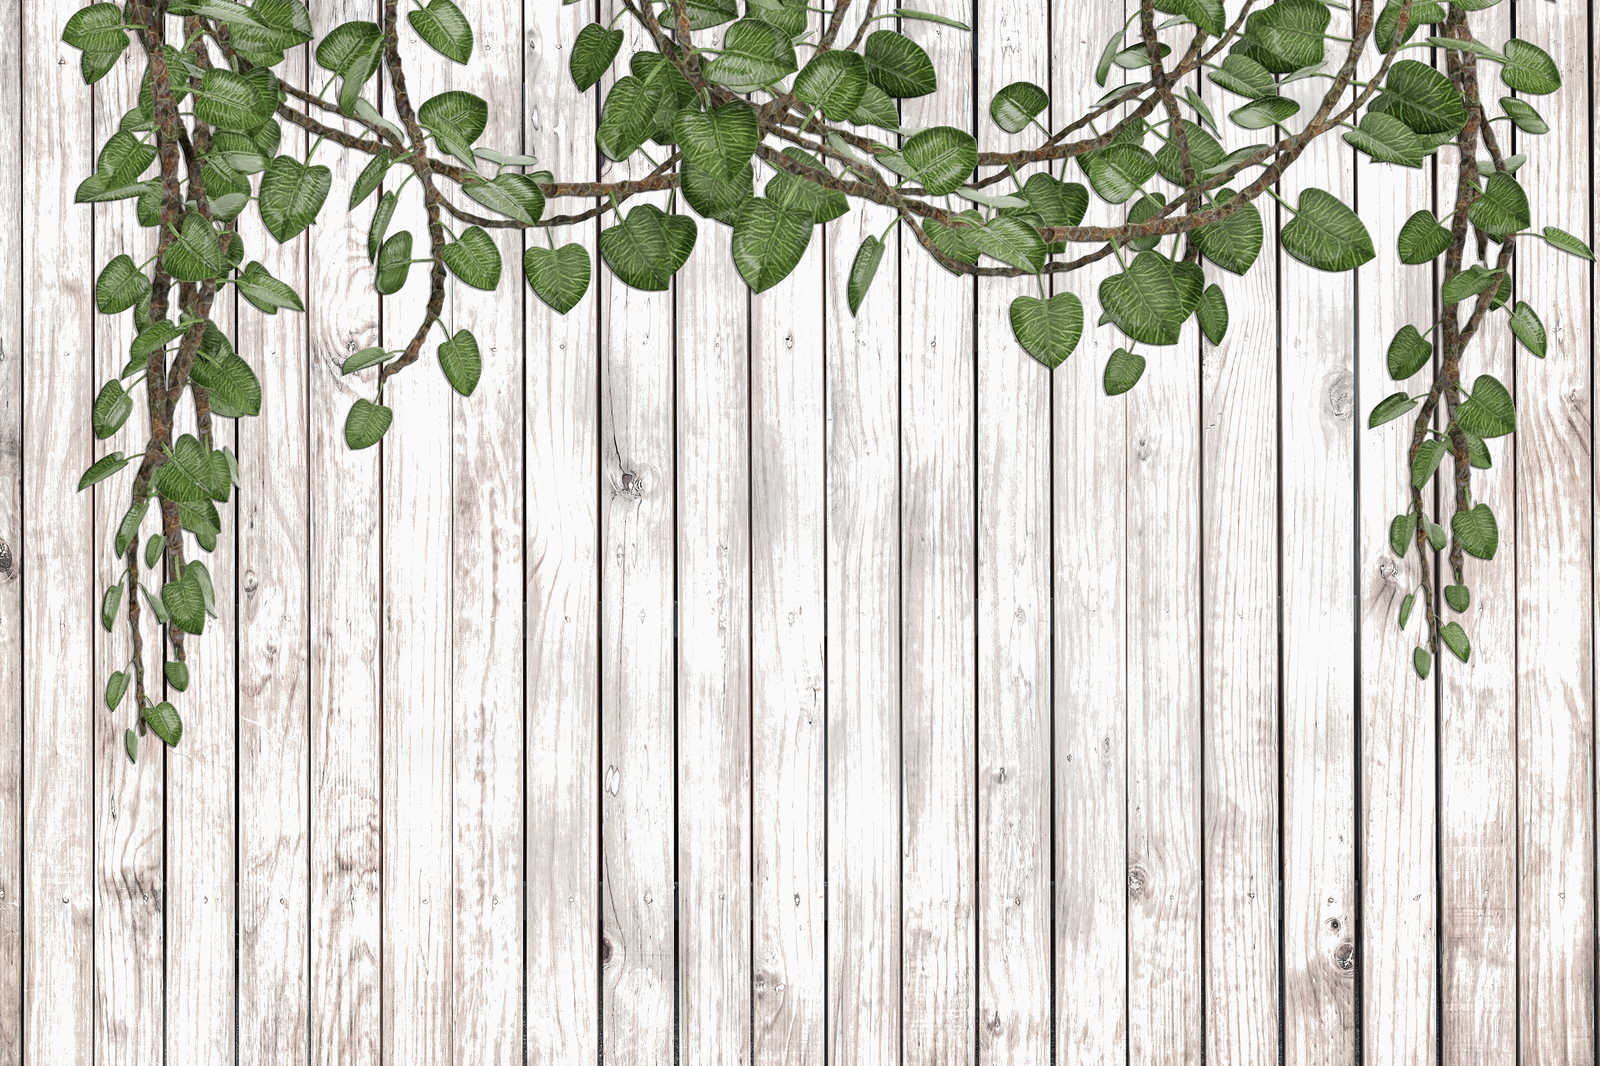             Leinwandbild Holzwand mit herabragenden Blättern naturell – 0,90 m x 0,60 m
        